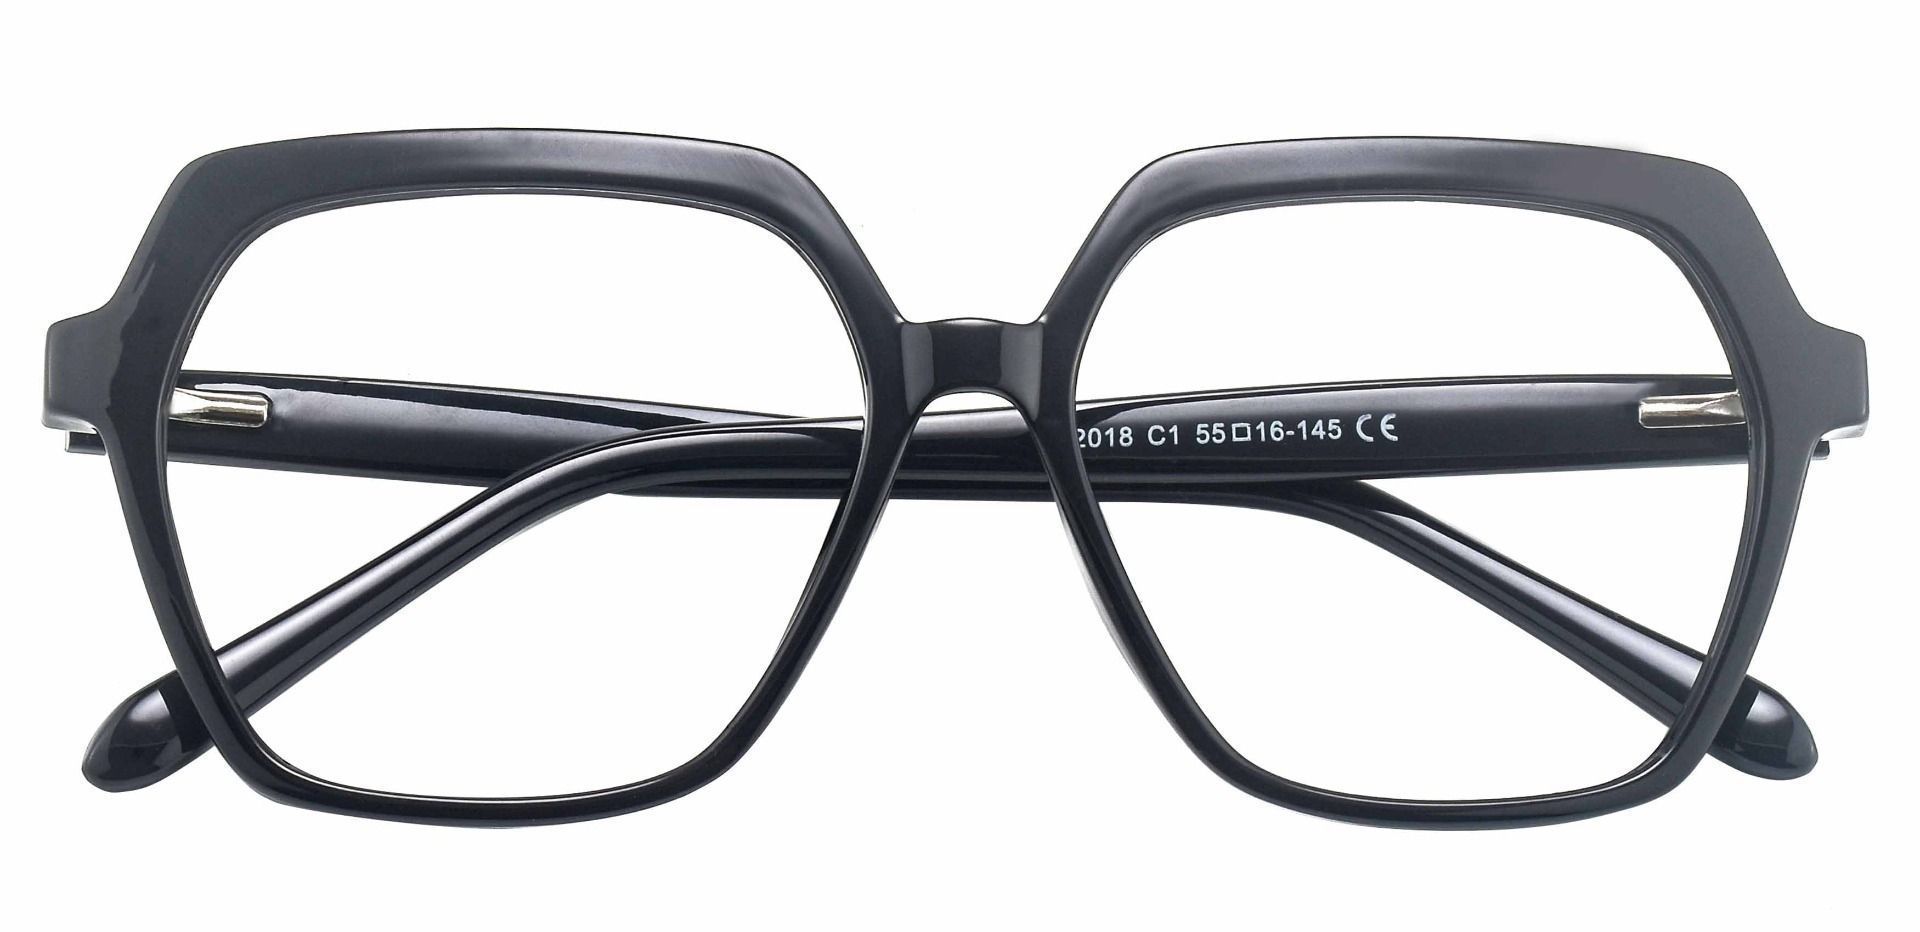 Regent Geometric Progressive Glasses - Black | Men's Eyeglasses | Payne ...